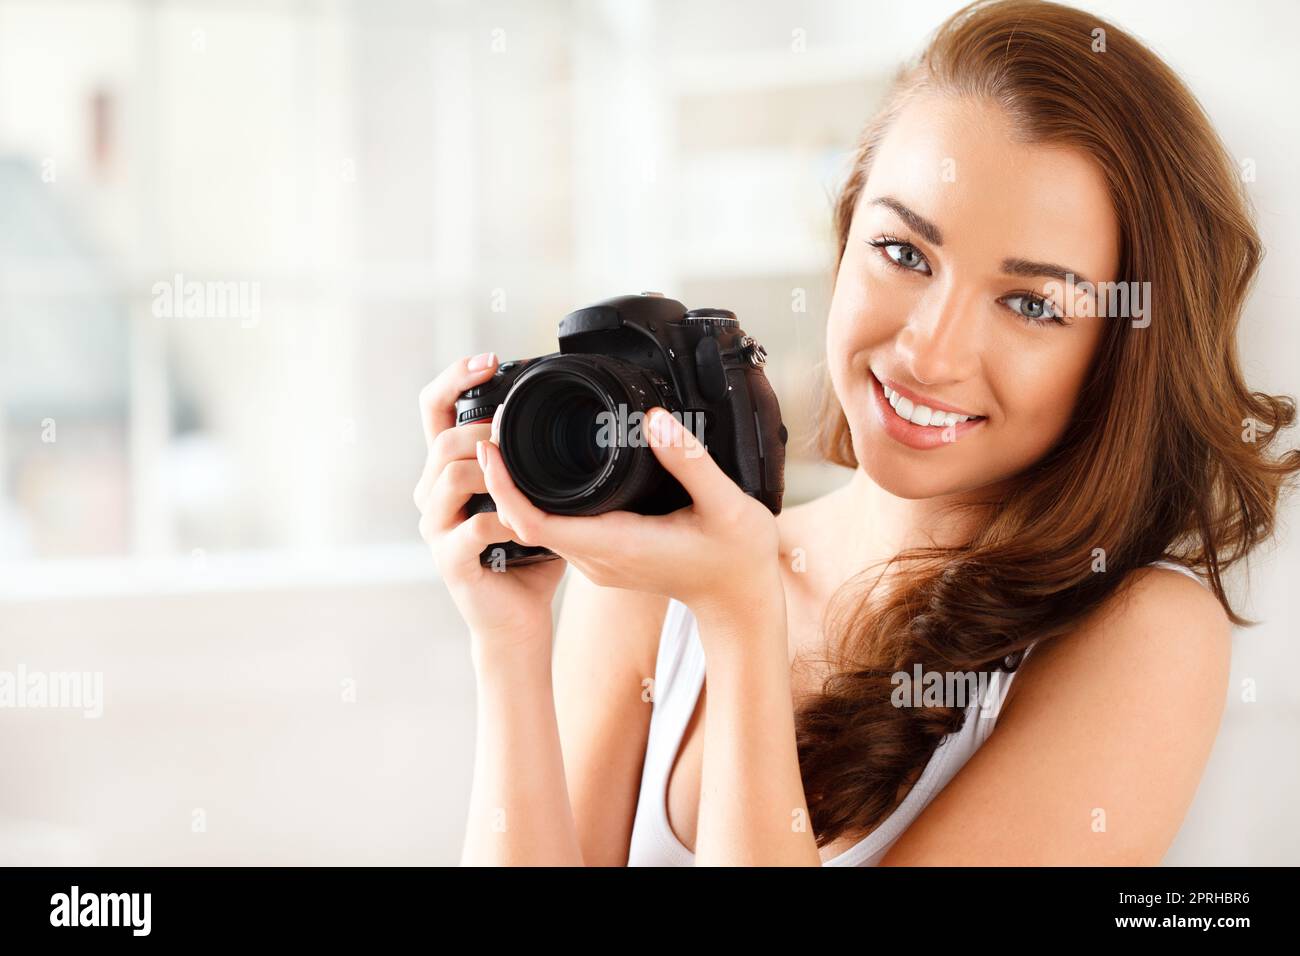 Photographe, appareil photo numérique et photographie avec une femme qui prend une photo ou une photo à l'intérieur. Portrait d'une jeune femme avec un sourire tenant le matériel photo pour une prise de vue de beauté avec un modèle heureux Banque D'Images